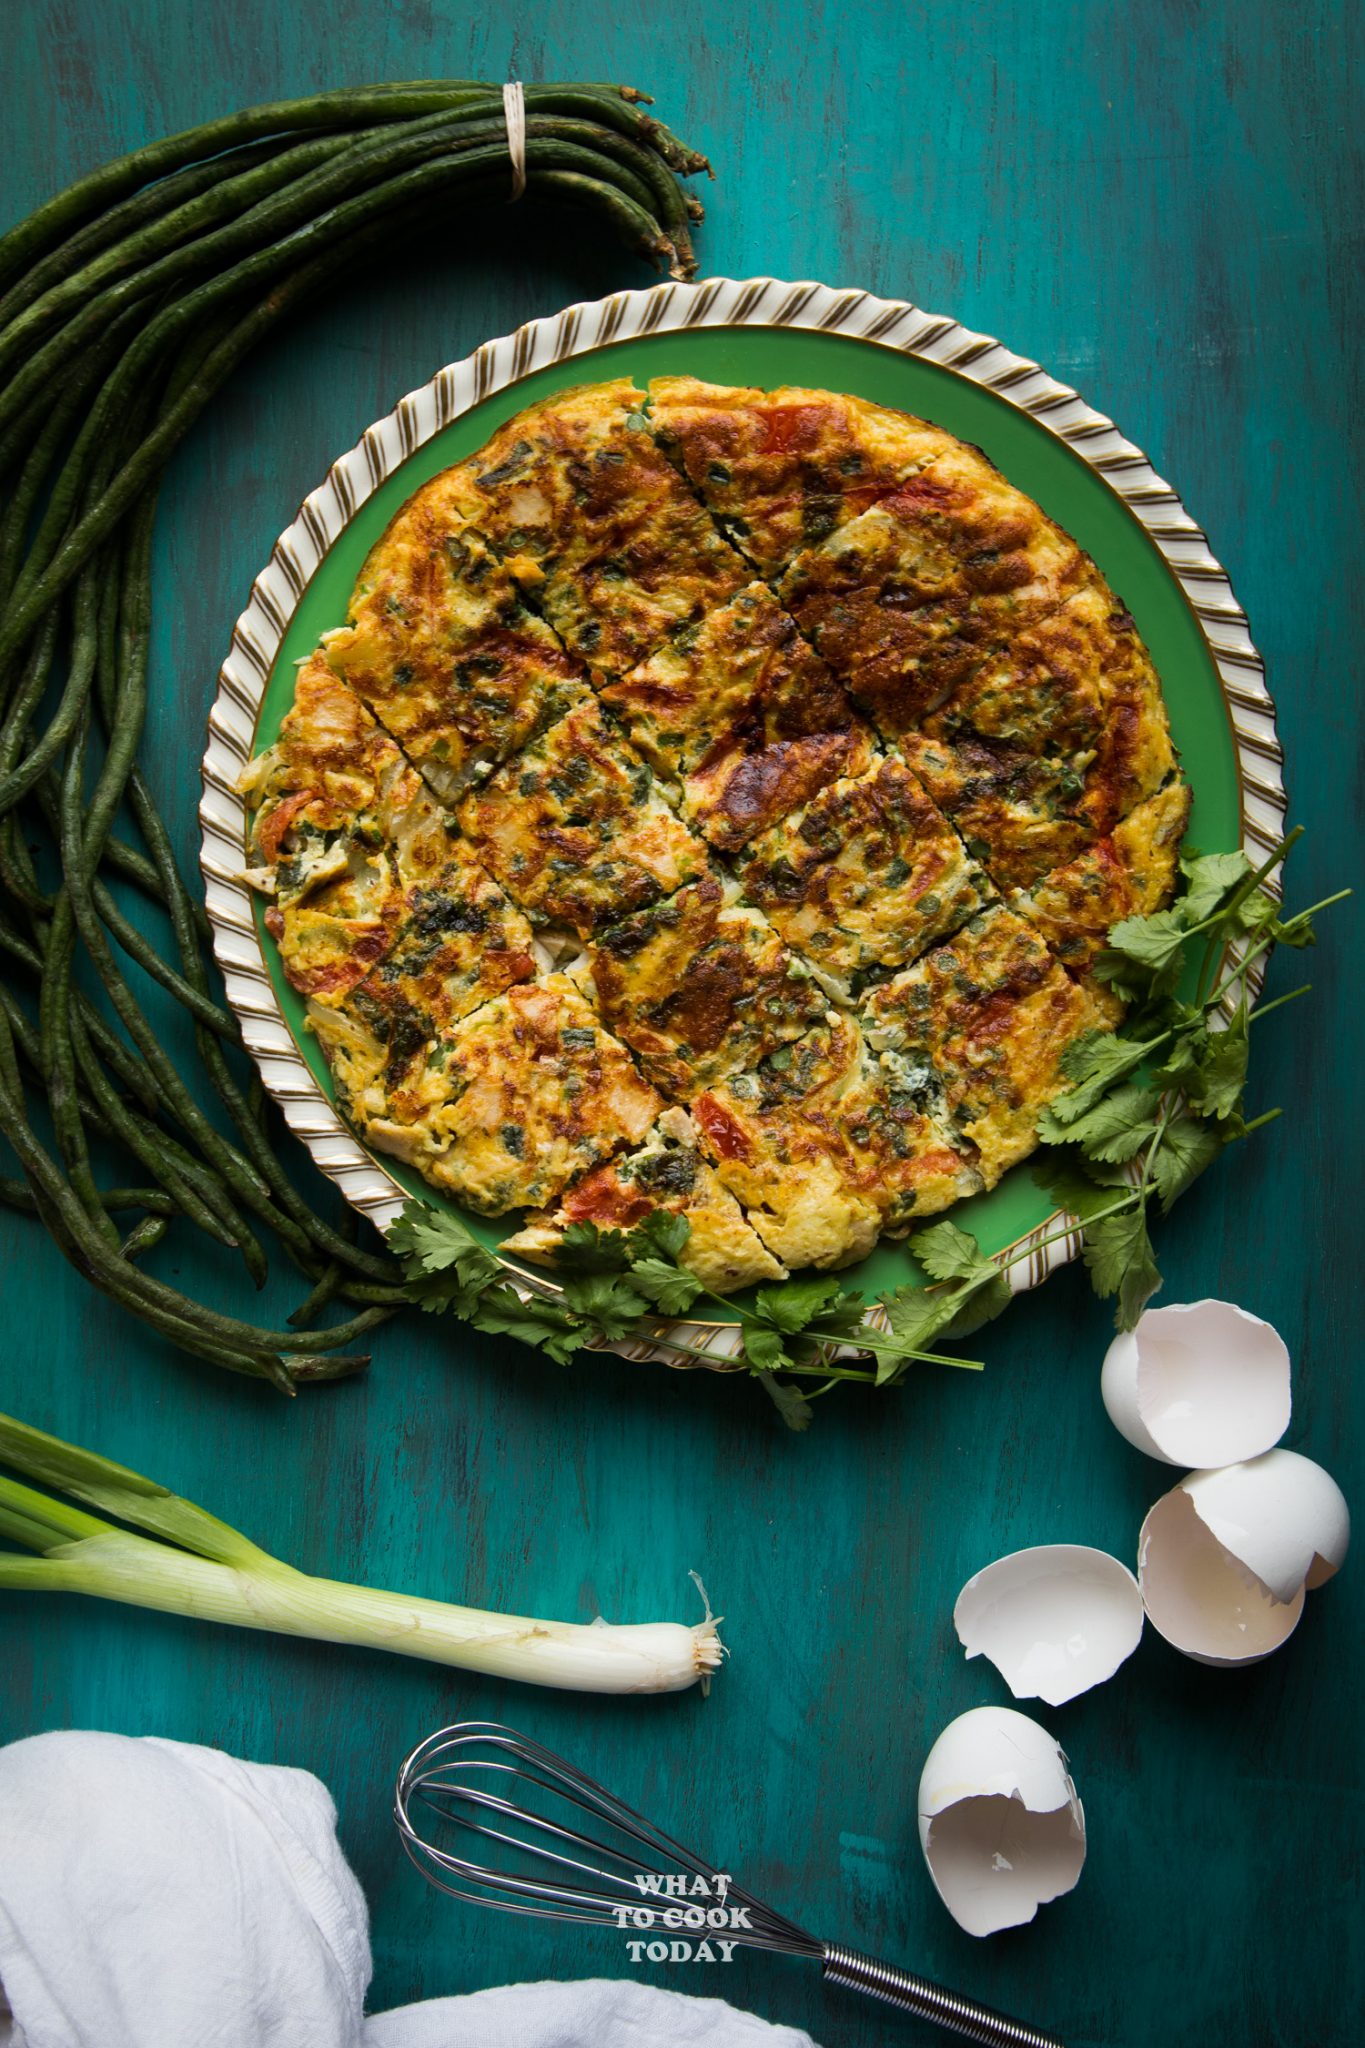 Laotian Omelette #eggs #omelette #laos #easyrecipes